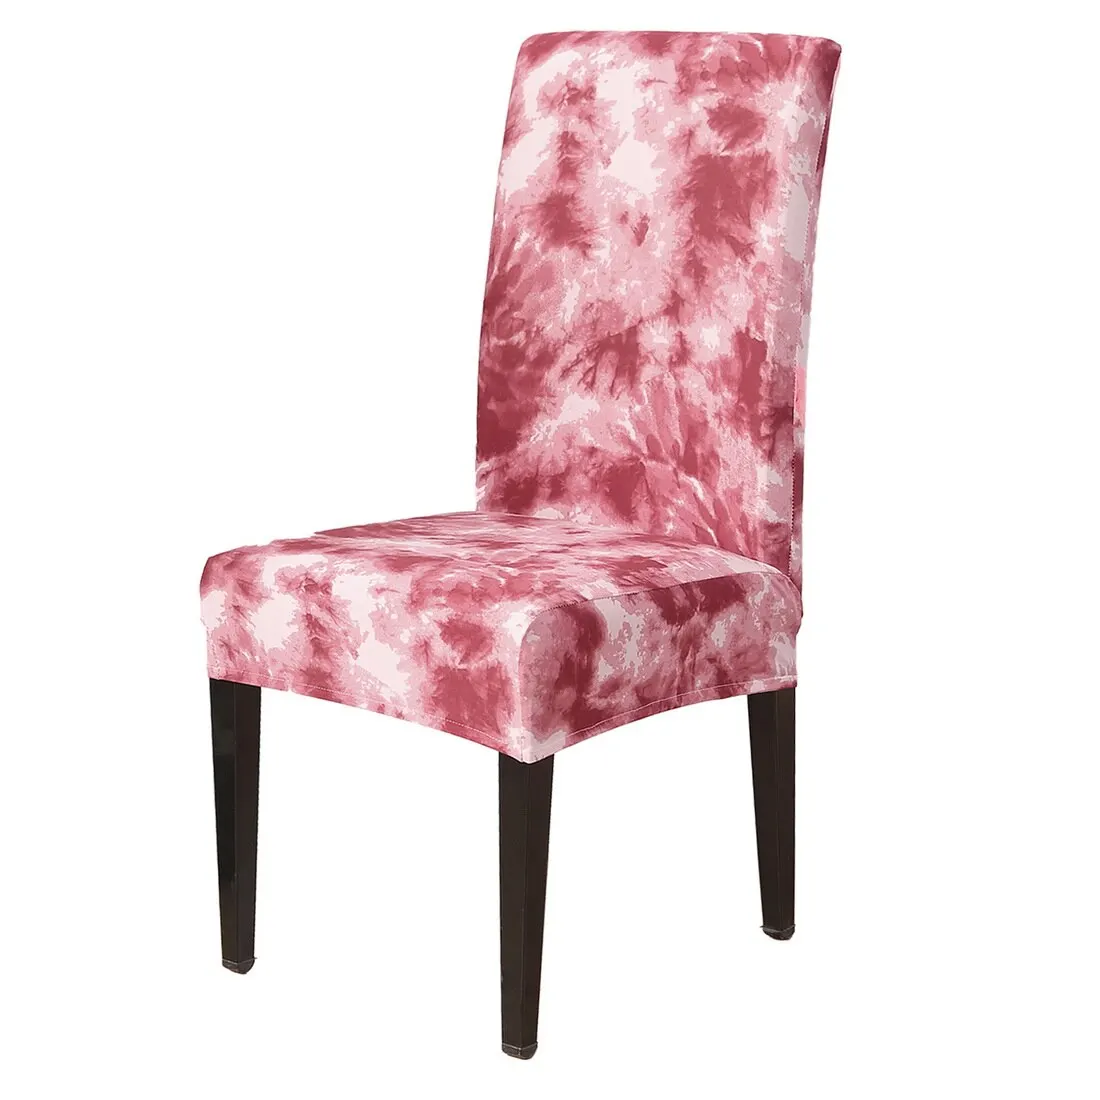 Съемный стул чехлы с цветочным принтом эластичные Чехлы ресторан для свадеб банкета складной чехол на отельные стулья - Цвет: red 1pc